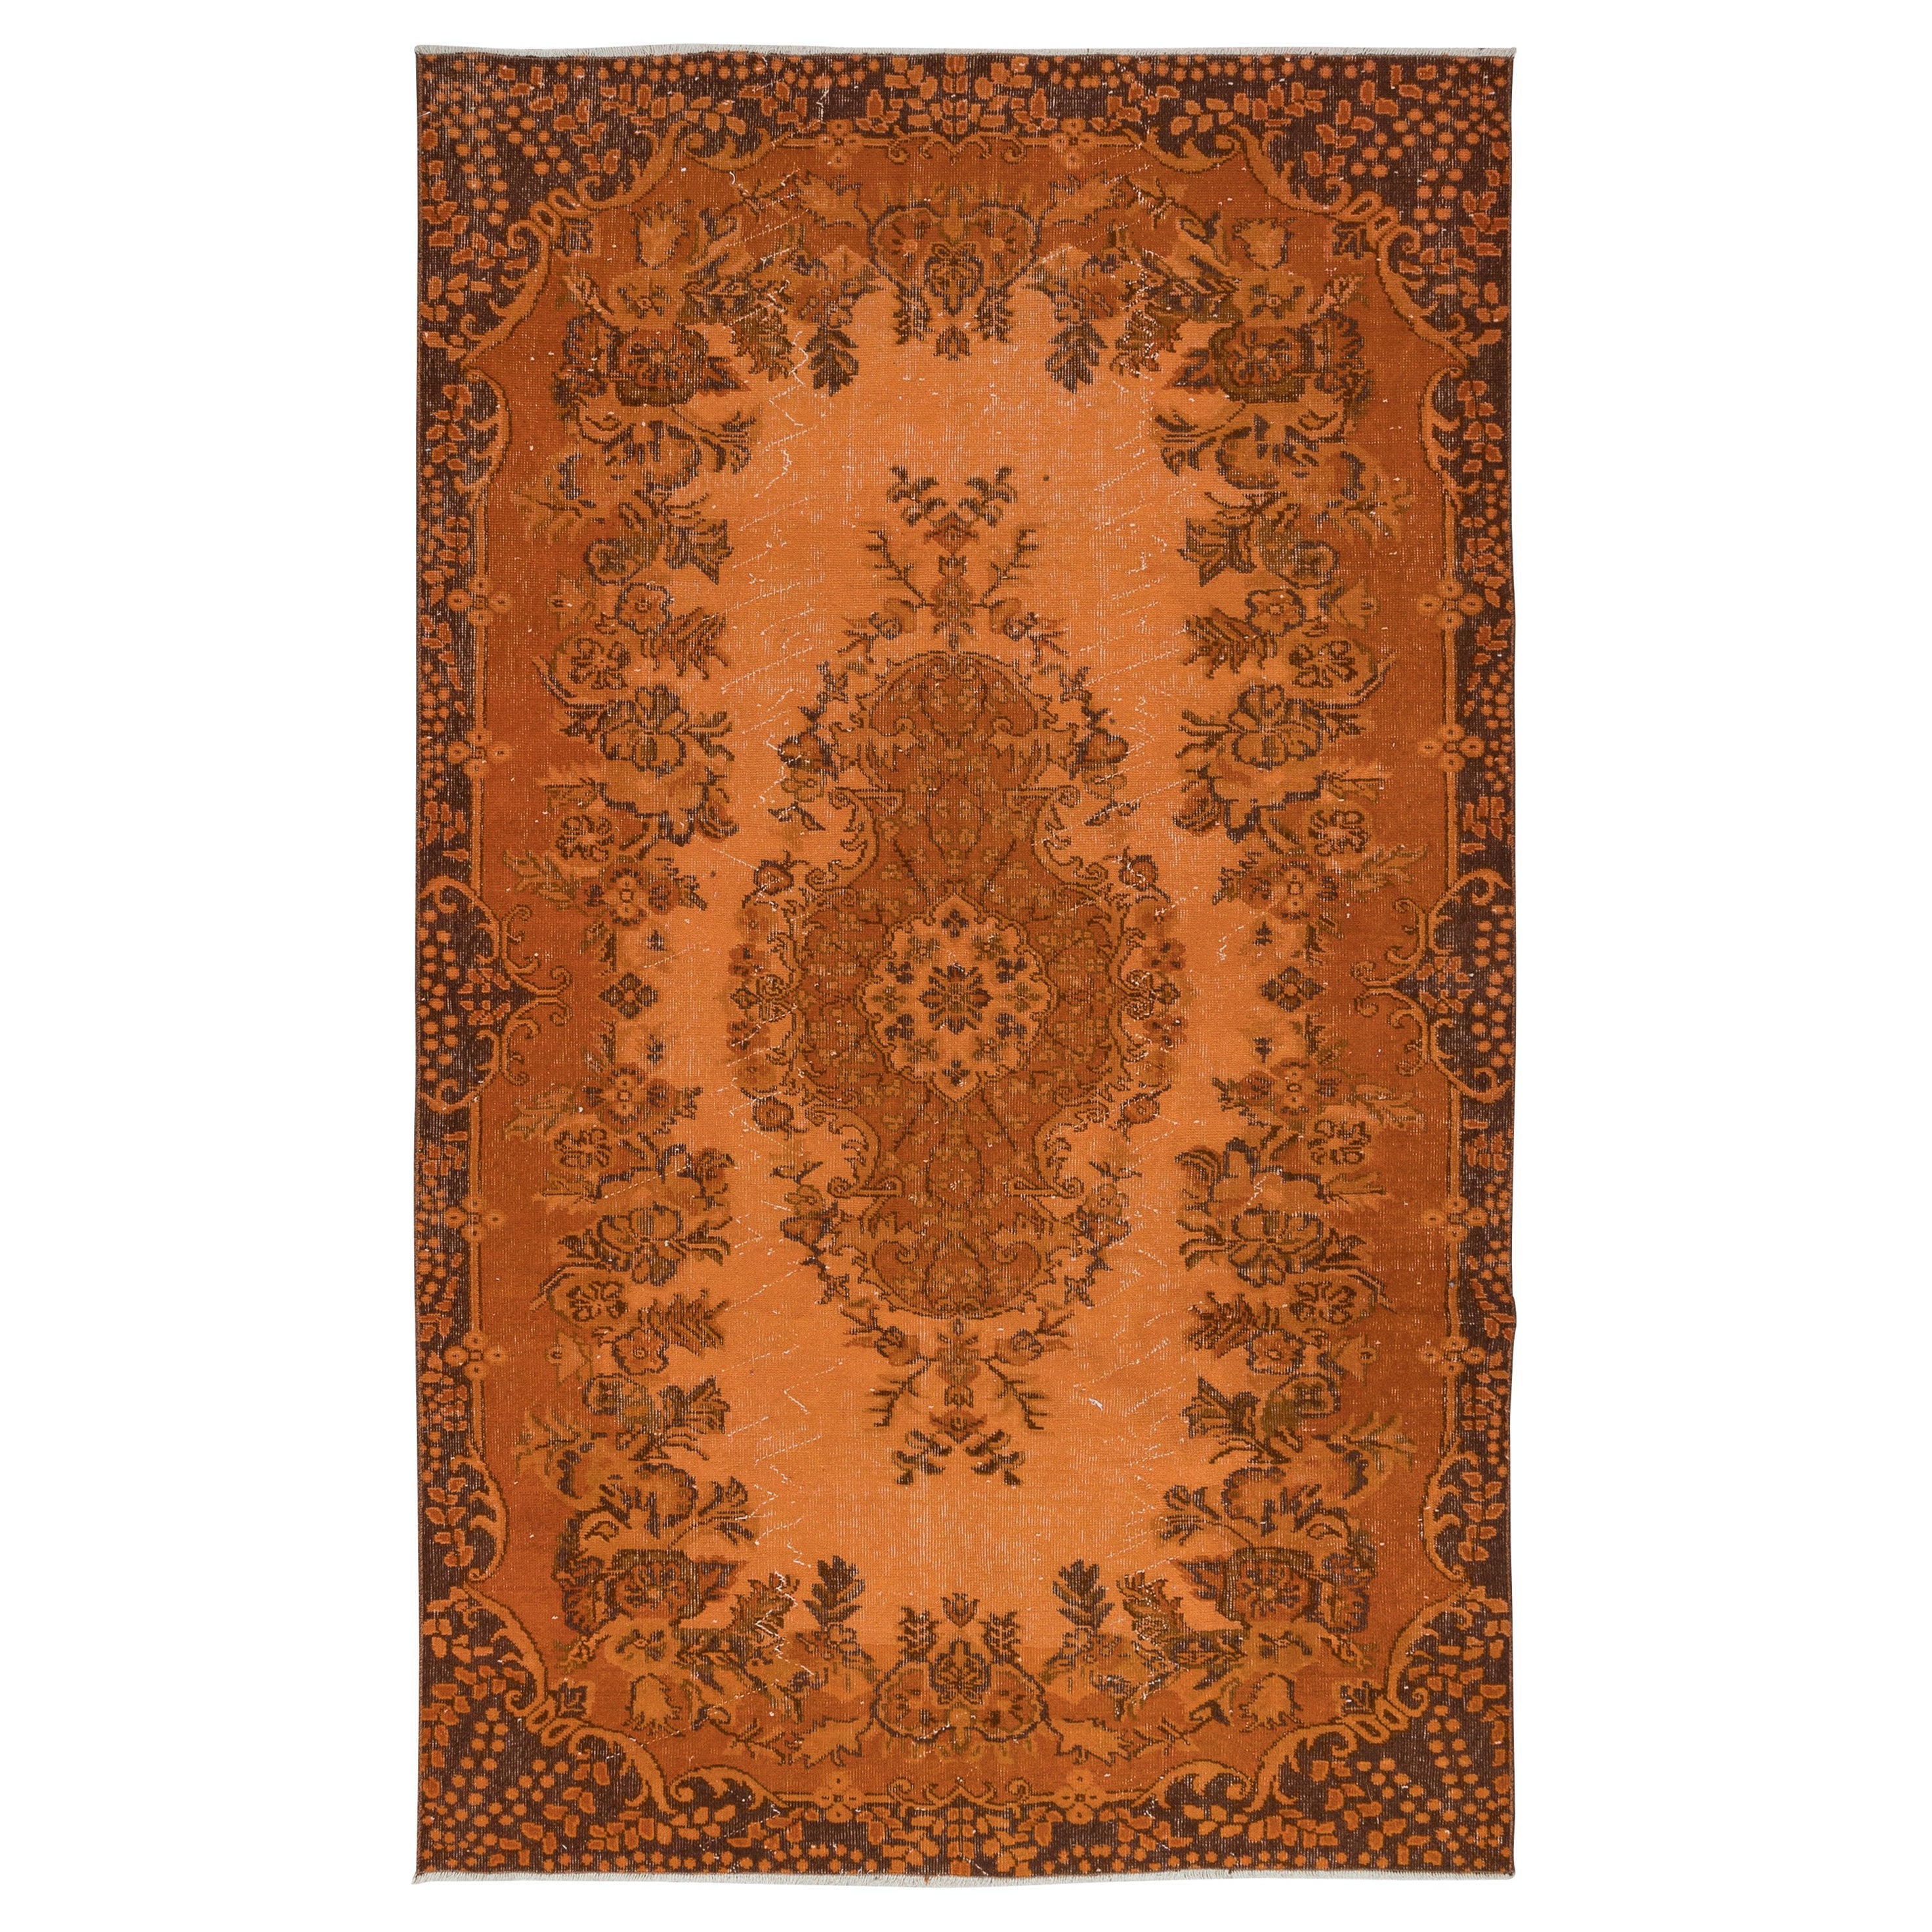 5.6x9.2 Ft Handgefertigter türkischer orangefarbener Teppich, moderner Teppich im Medaillon-Design